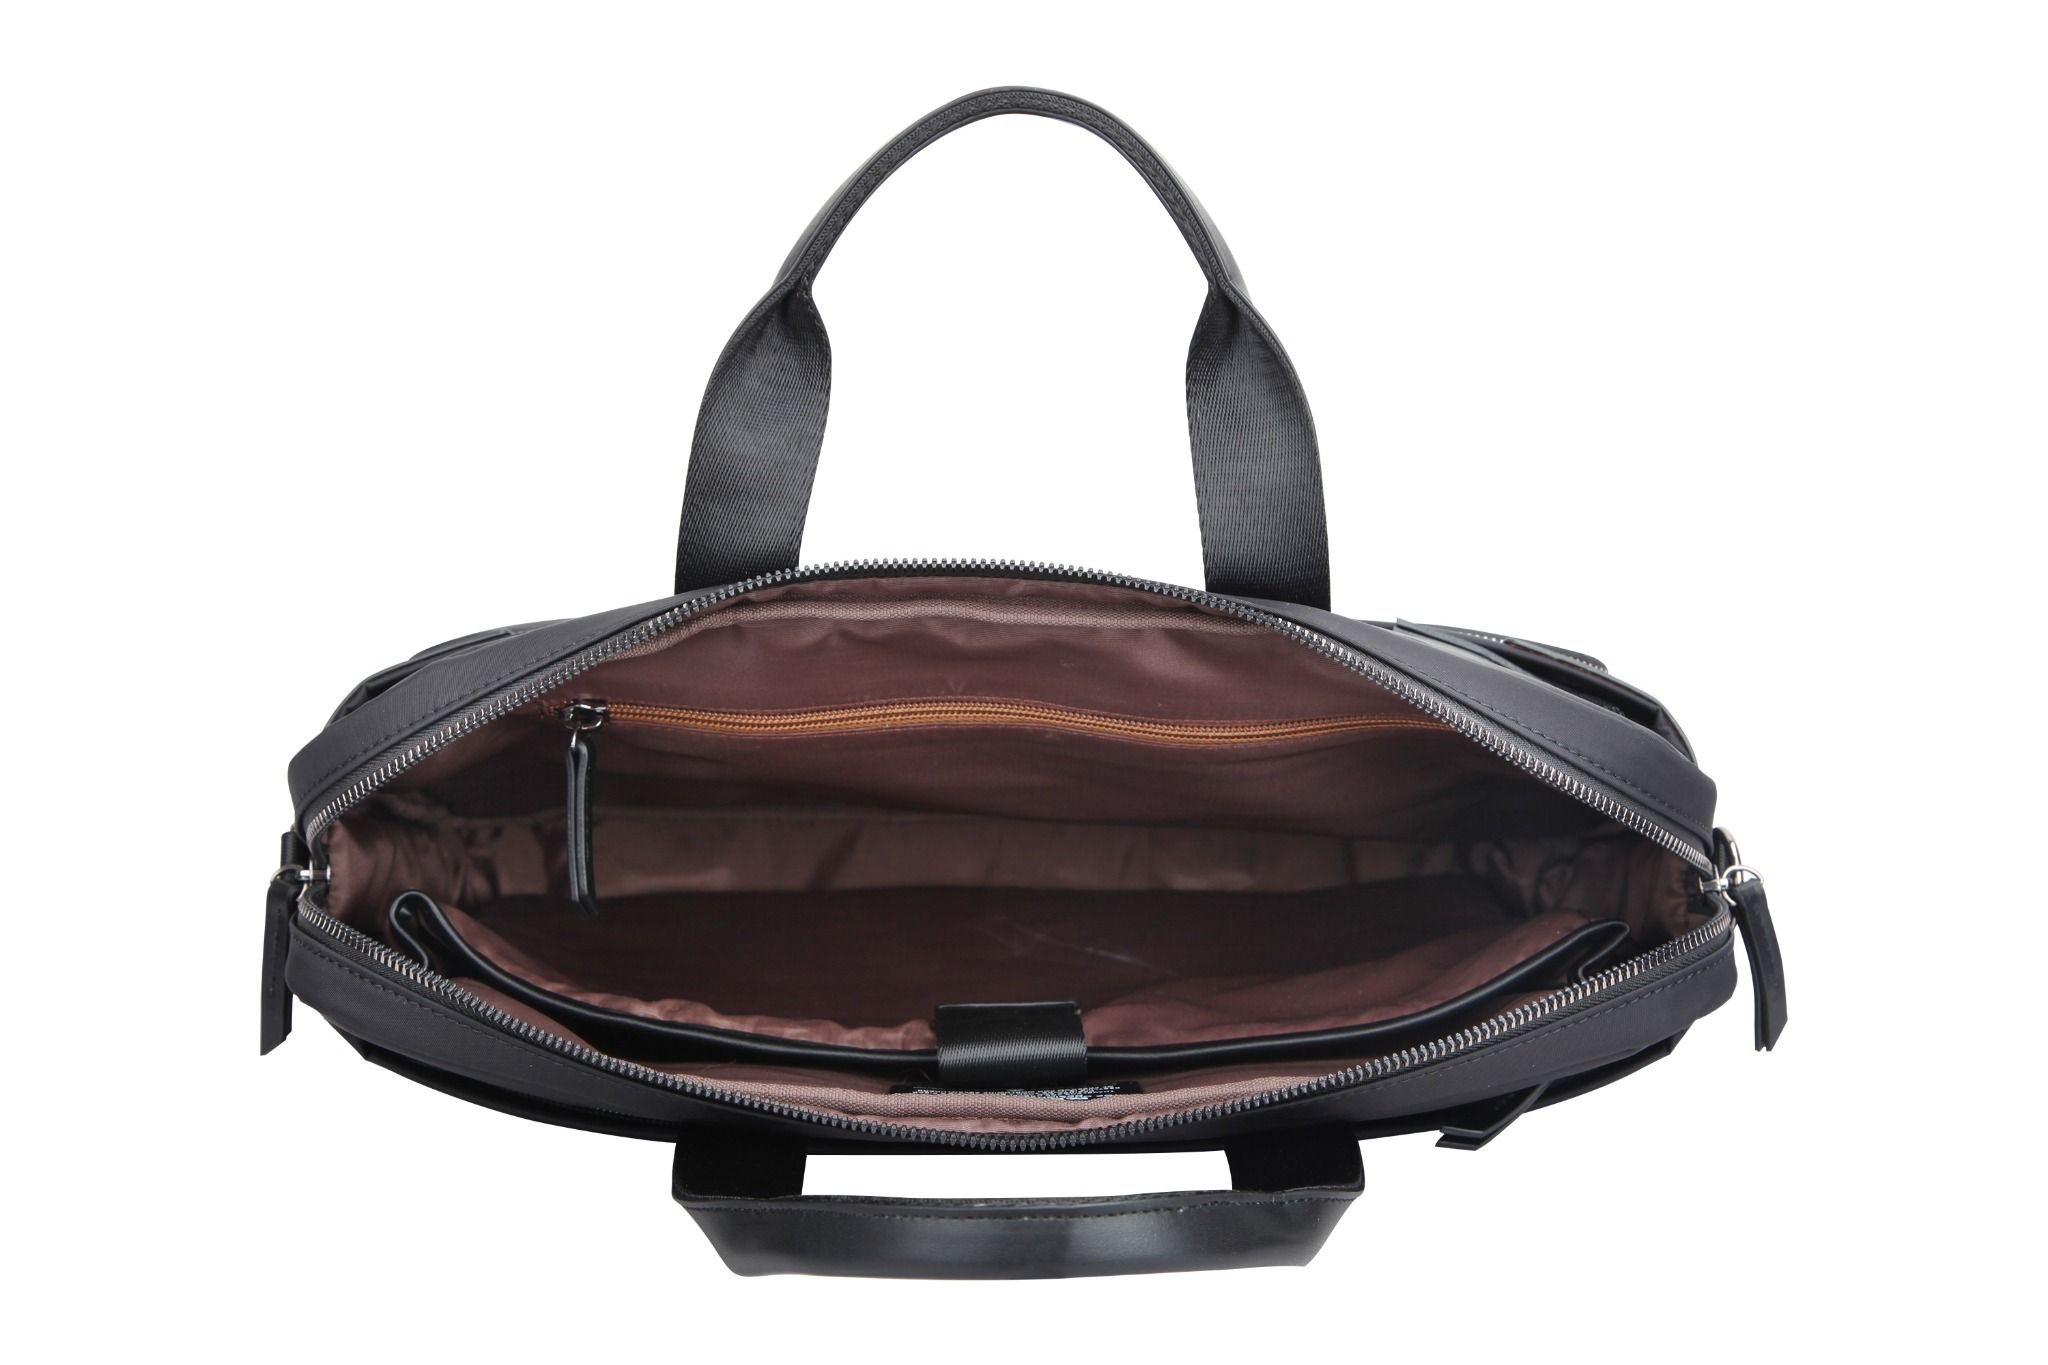  Túi xách 14 inch BESTLIFE Elegant - Túi xách dùng Chất liệu Nylon + PU kháng nước - Mã BBC-3464 - Bảo hành Chính hãng 2 năm 